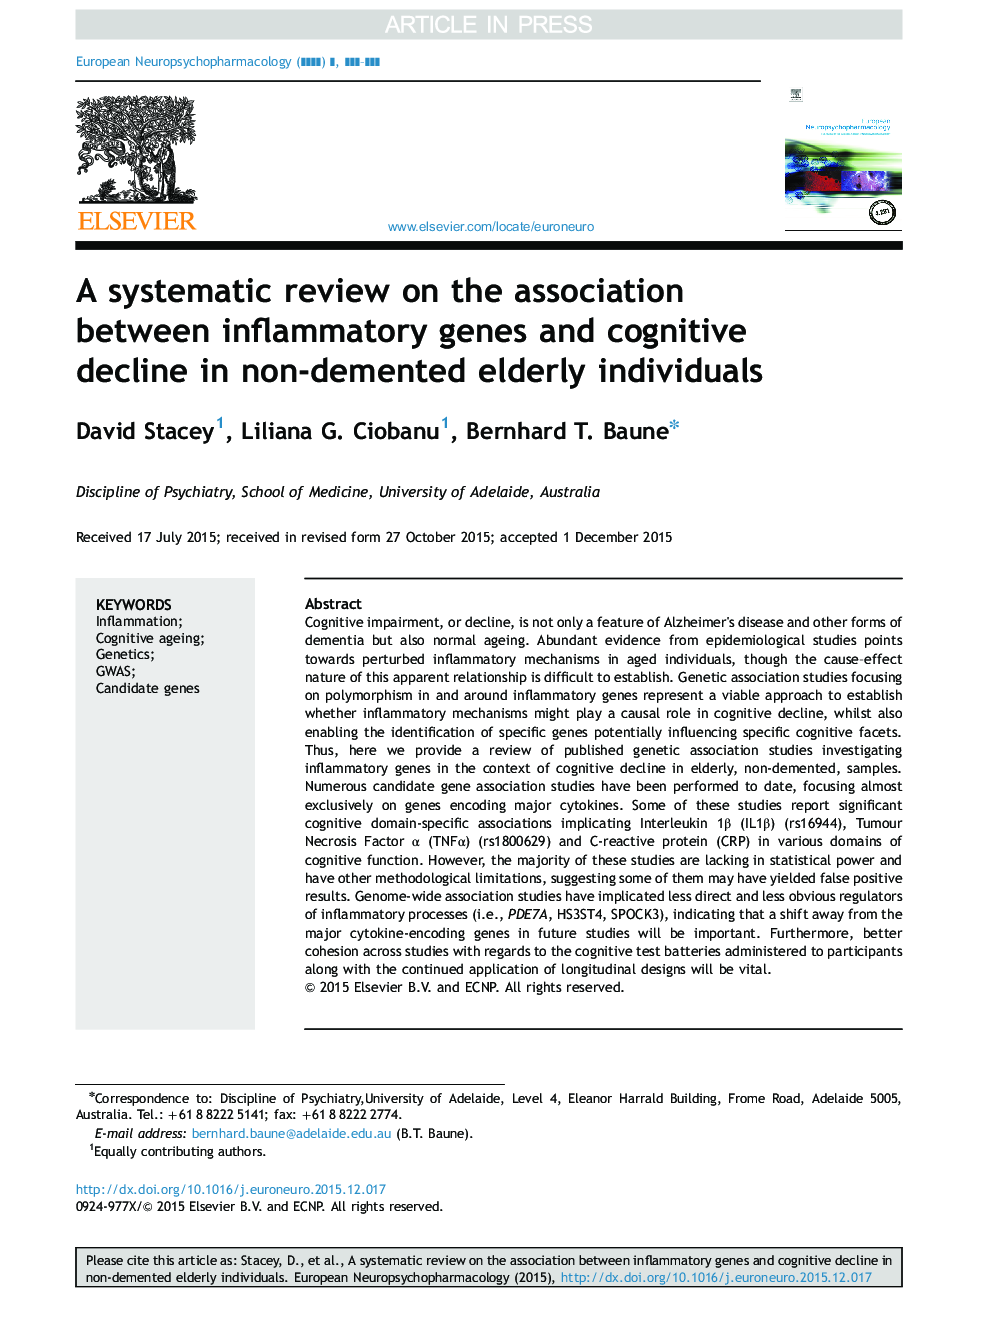 بررسی سیستماتیک در مورد ارتباط بین ژنهای التهابی و کاهش شناختی در افراد سالخورده غیر انسانی 